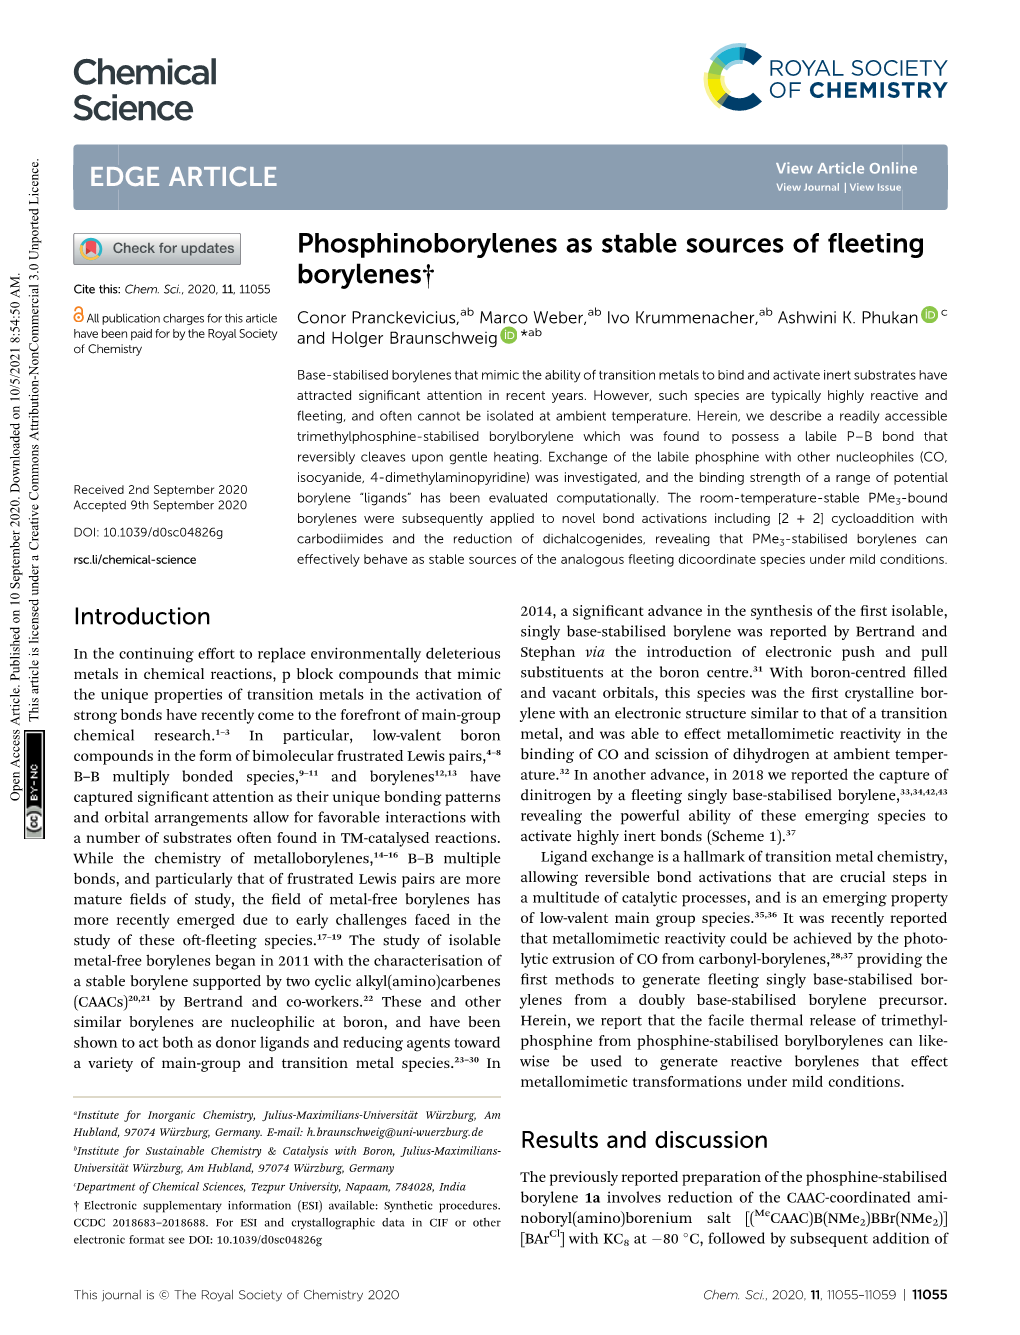 Phosphinoborylenes As Stable Sources of Fleeting Borylenes